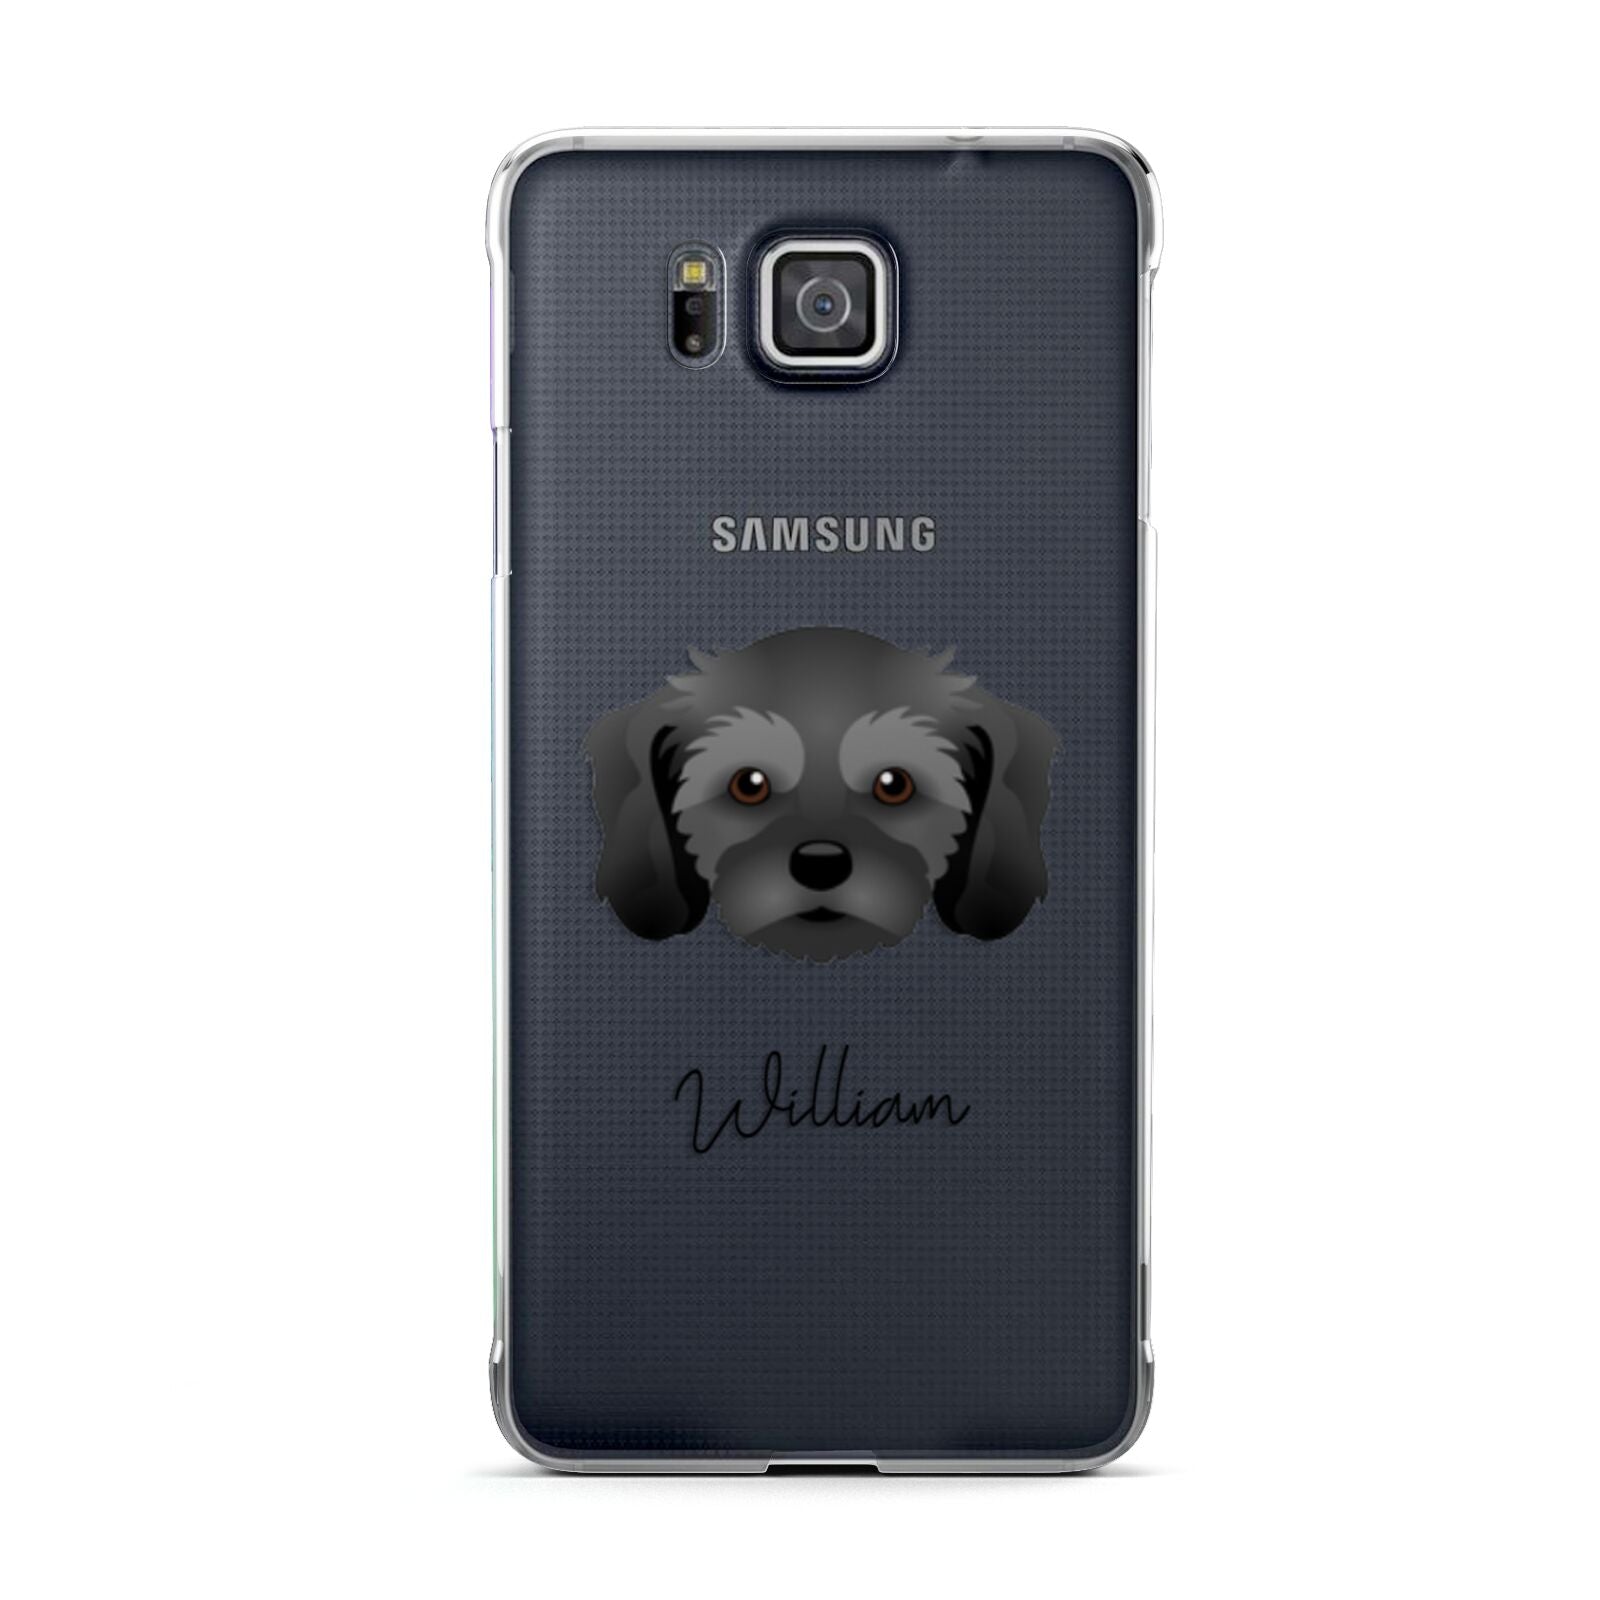 Cavachon Personalised Samsung Galaxy Alpha Case